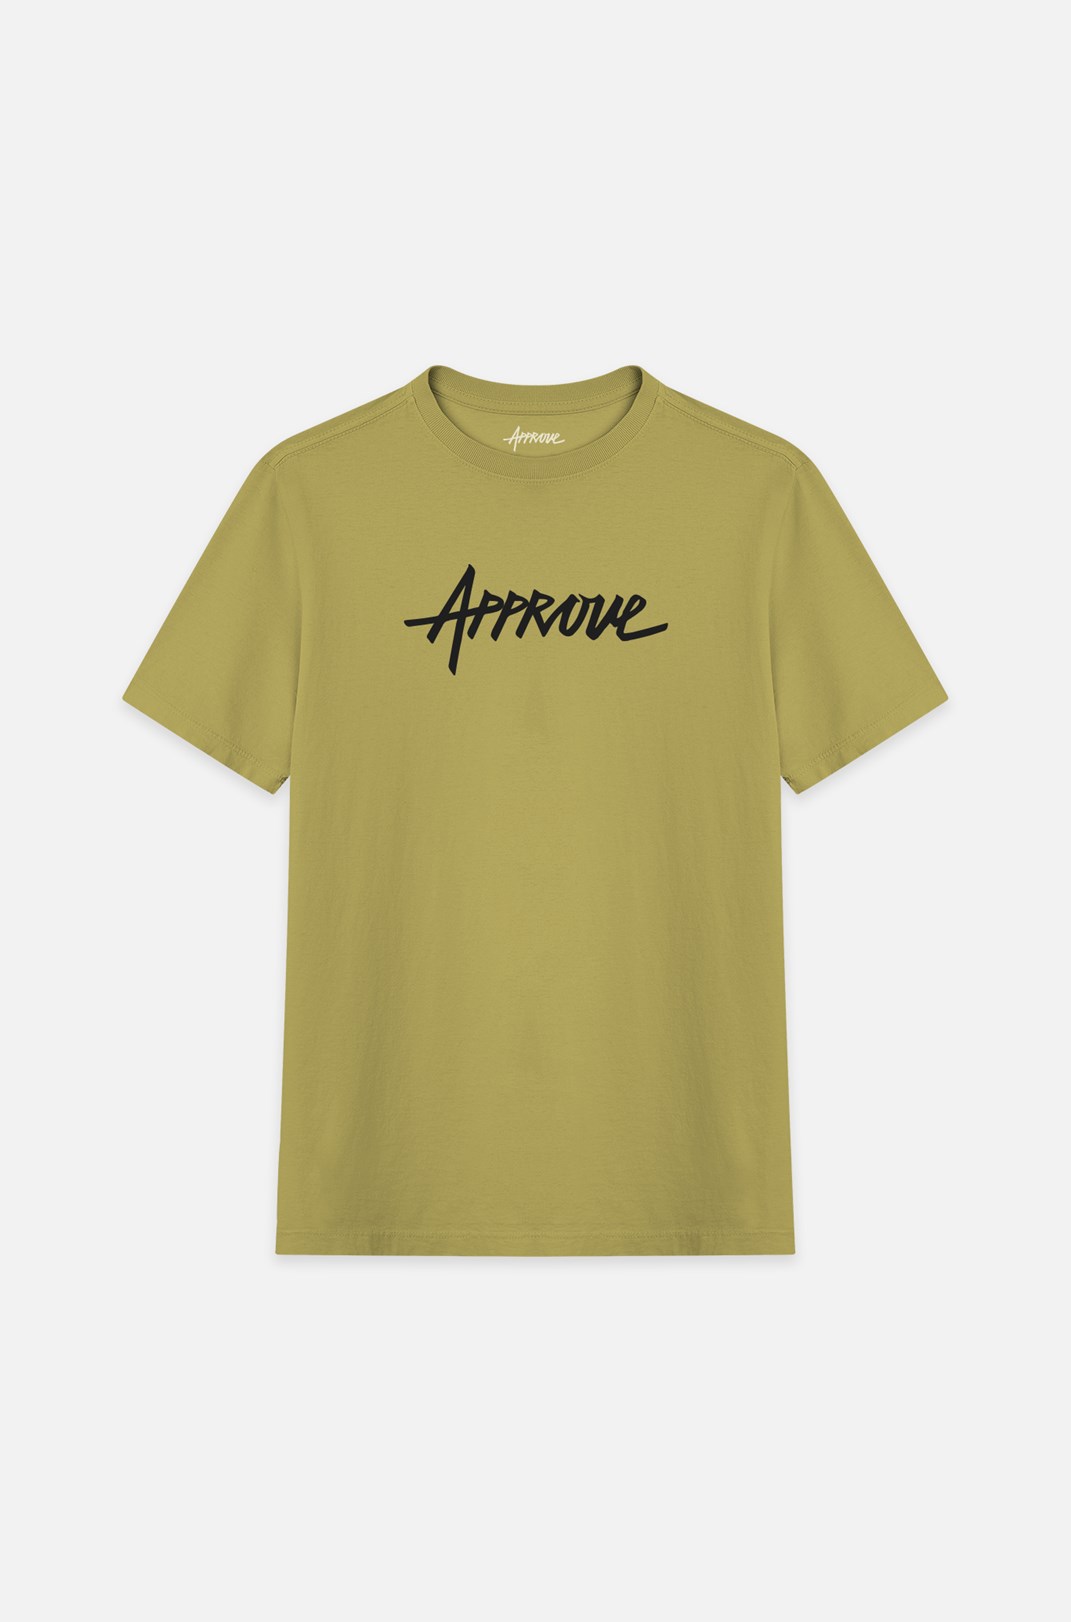 Camiseta Bold Approve Ensign Amarelo Claro